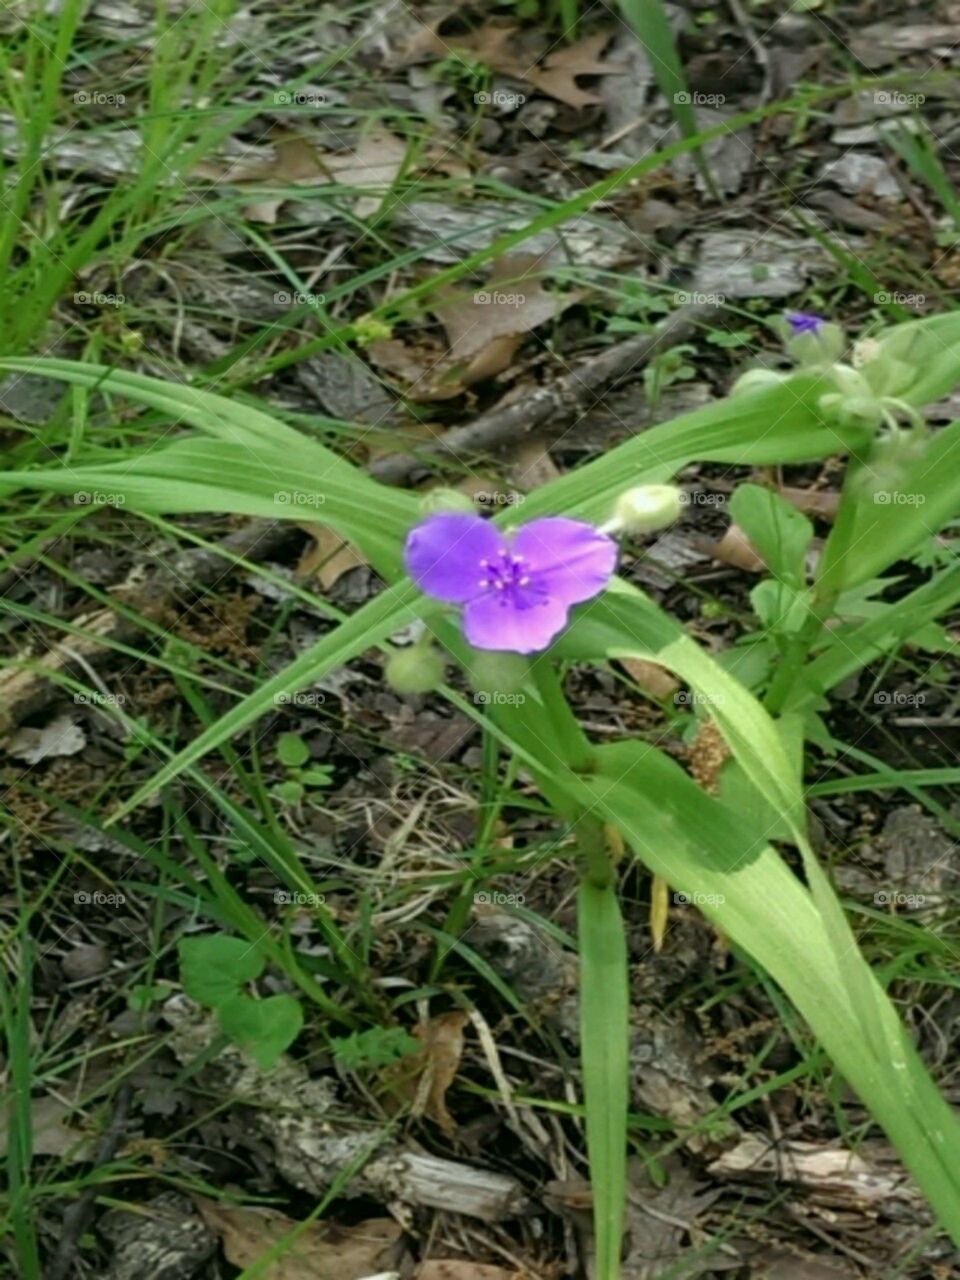 Wild flower. taken while on a walk